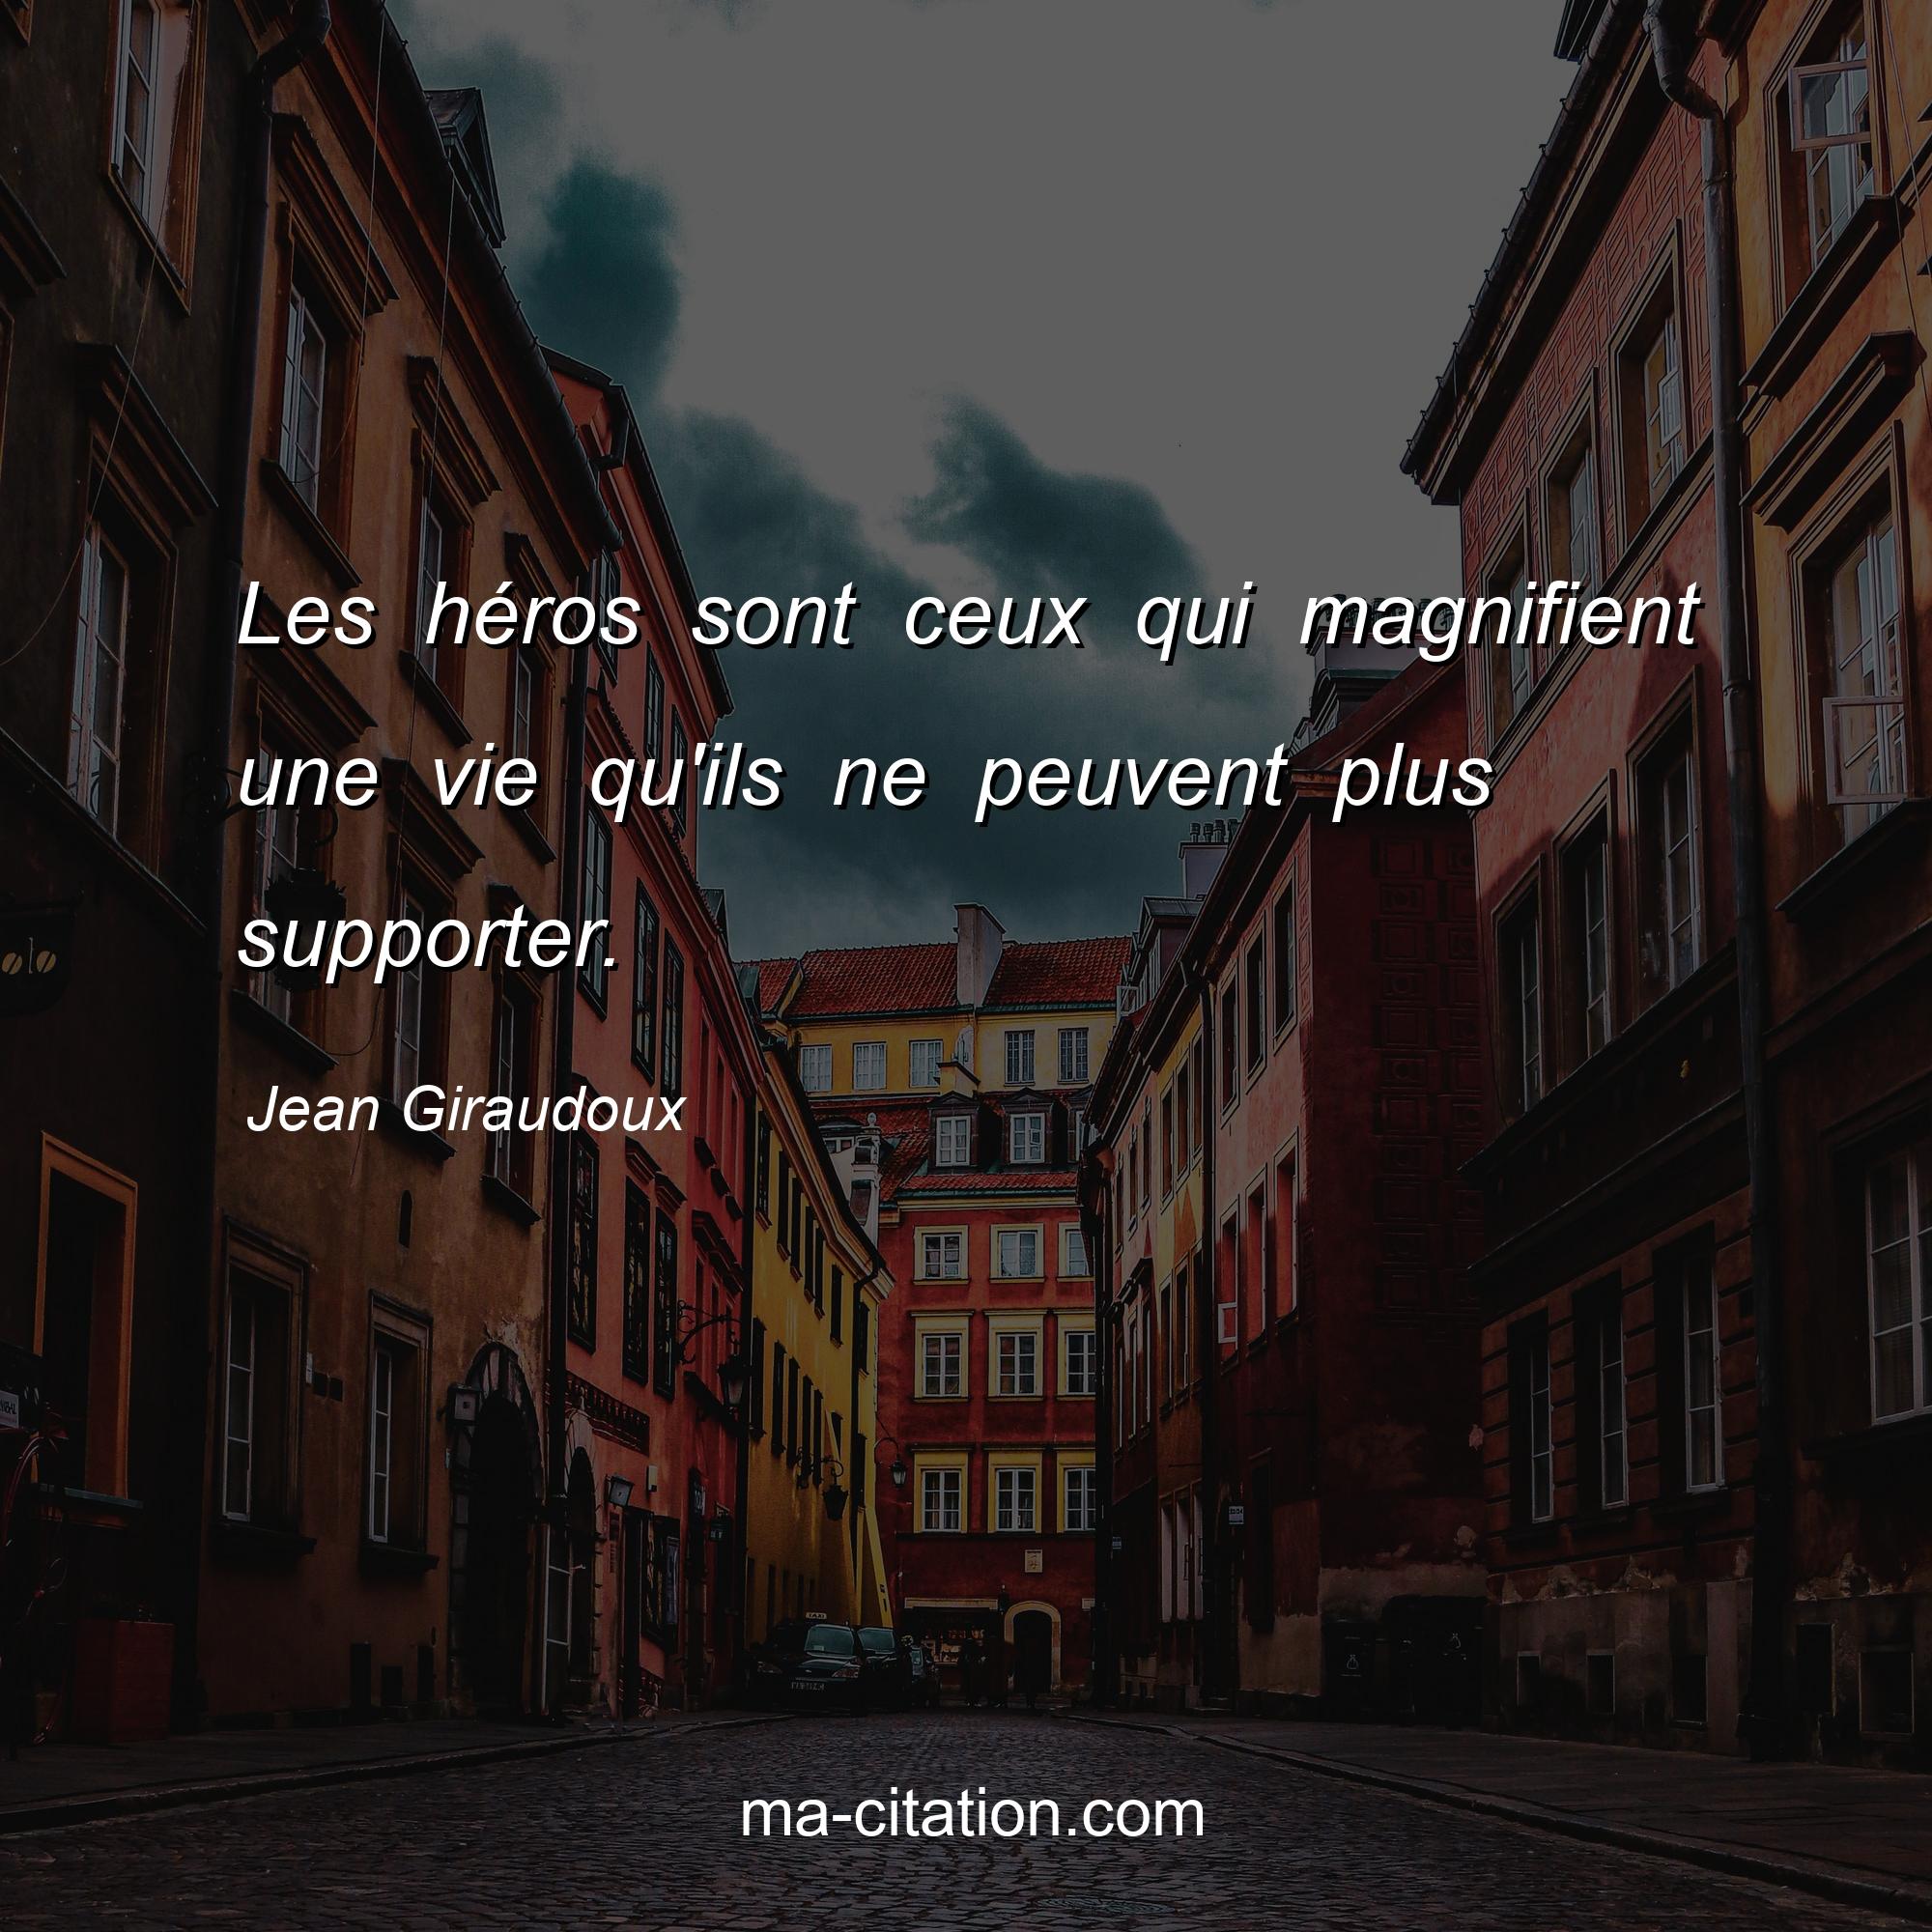 Jean Giraudoux : Les héros sont ceux qui magnifient une vie qu'ils ne peuvent plus supporter.